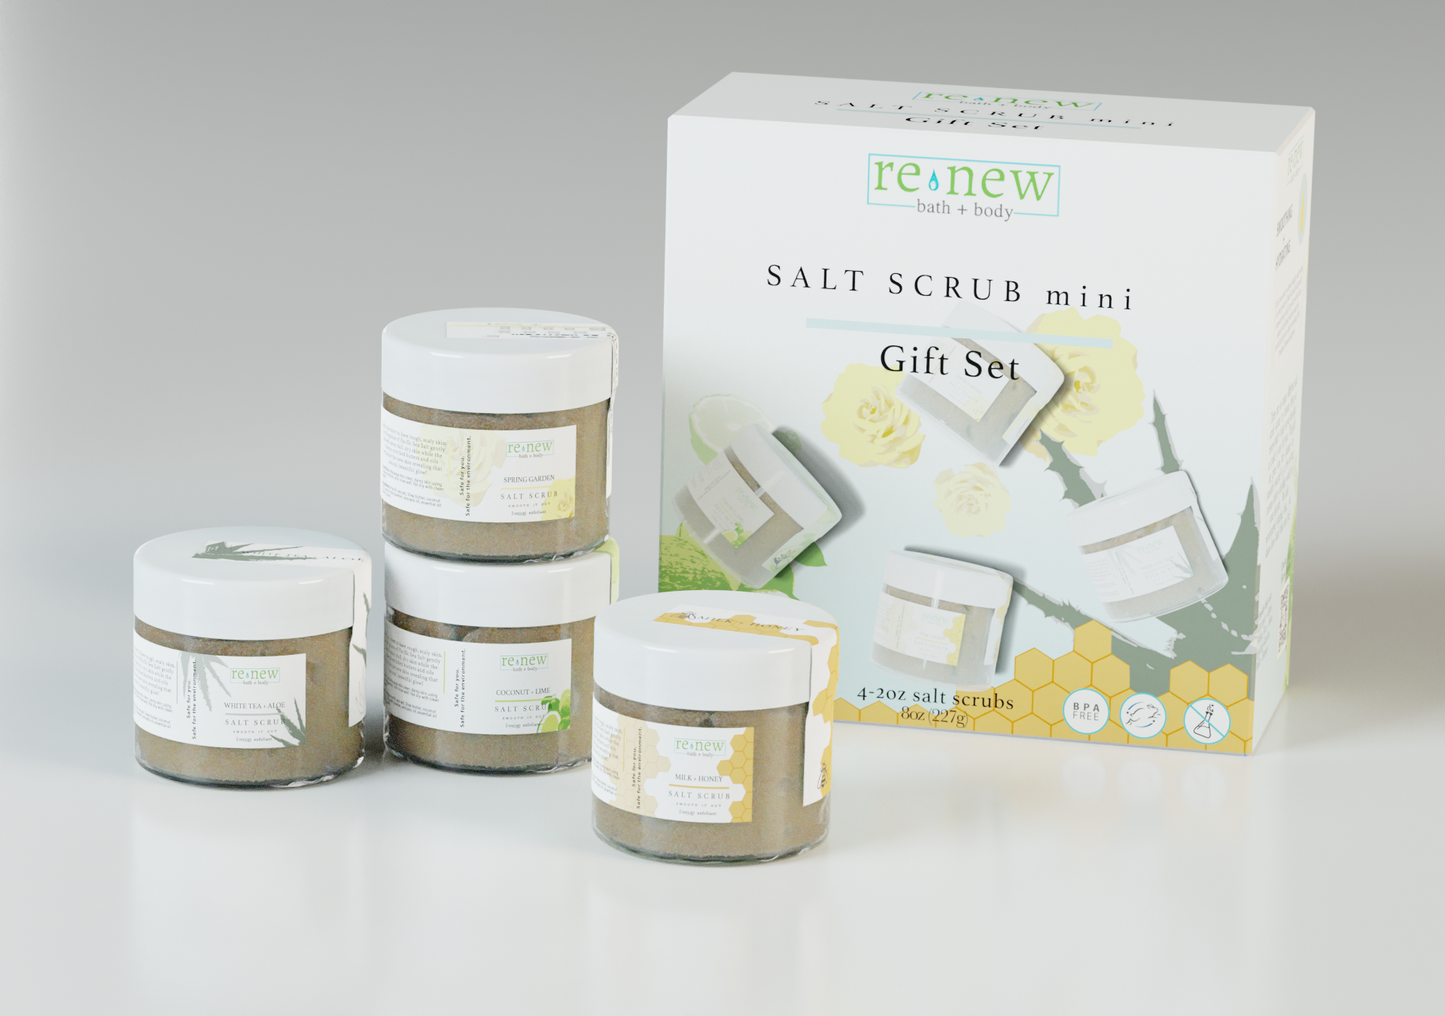 Salt Scrub Mini Gift Set